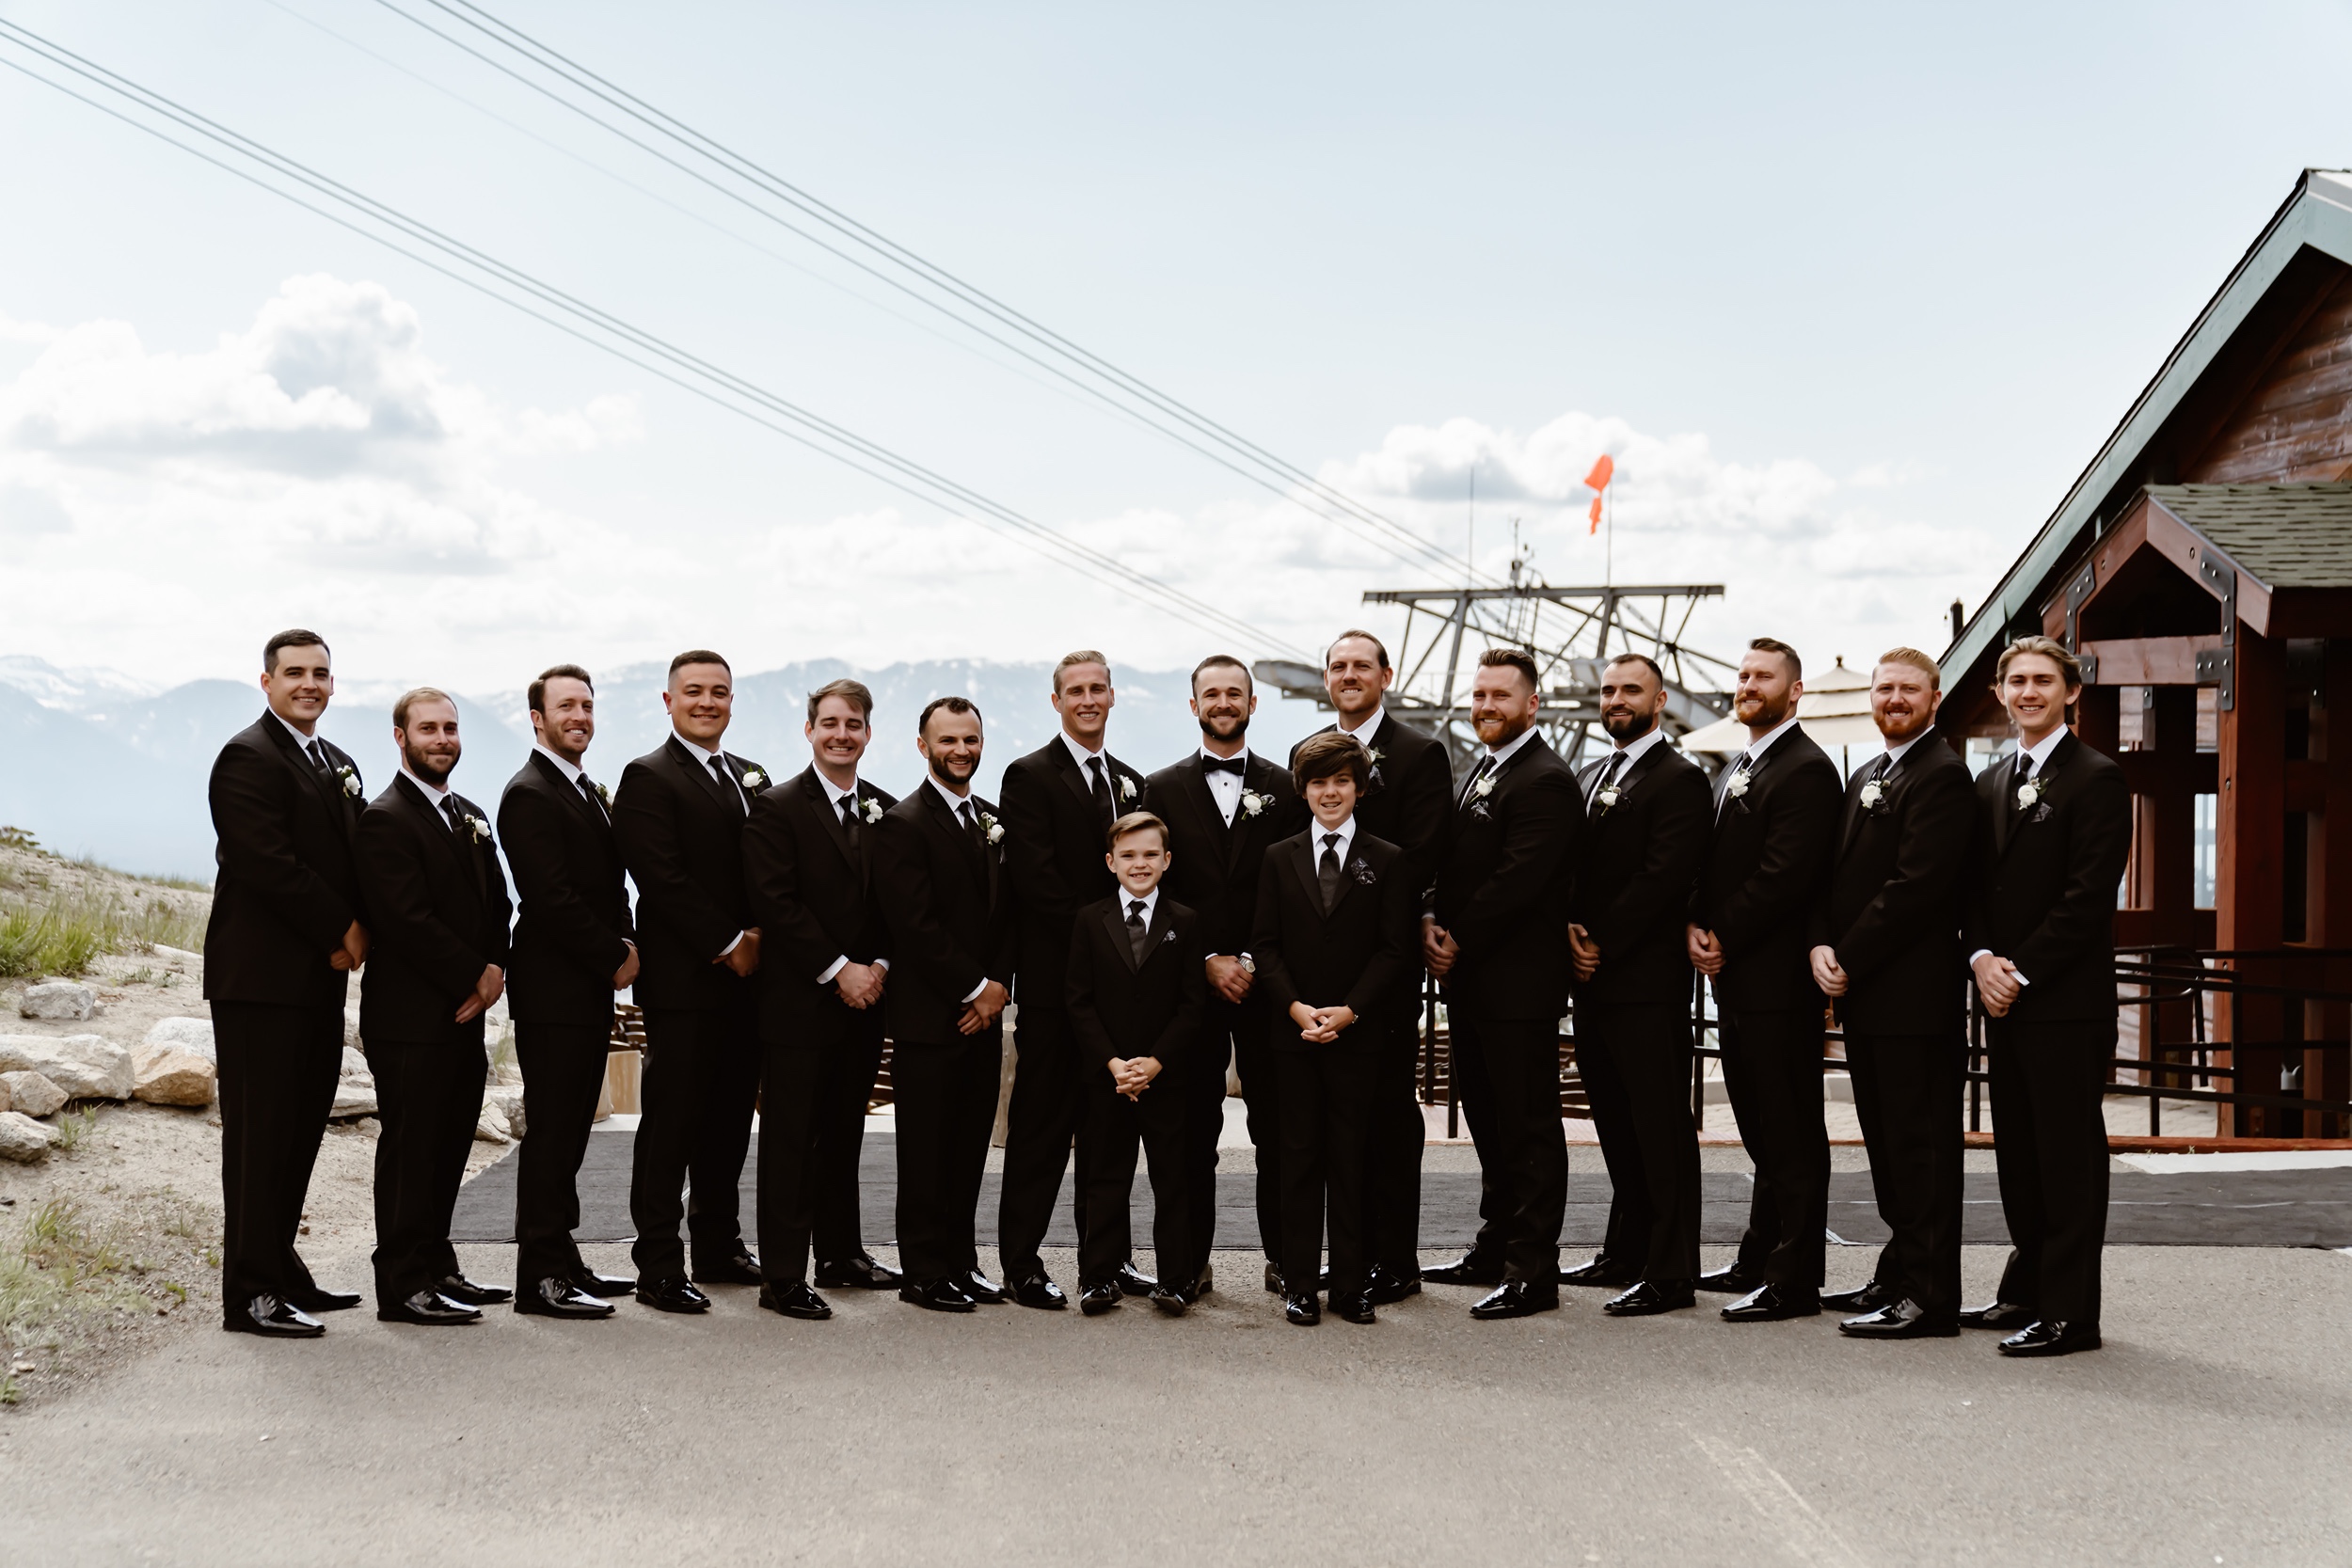 Groom and groomsmen pose at Heavenly Ski Resort wedding